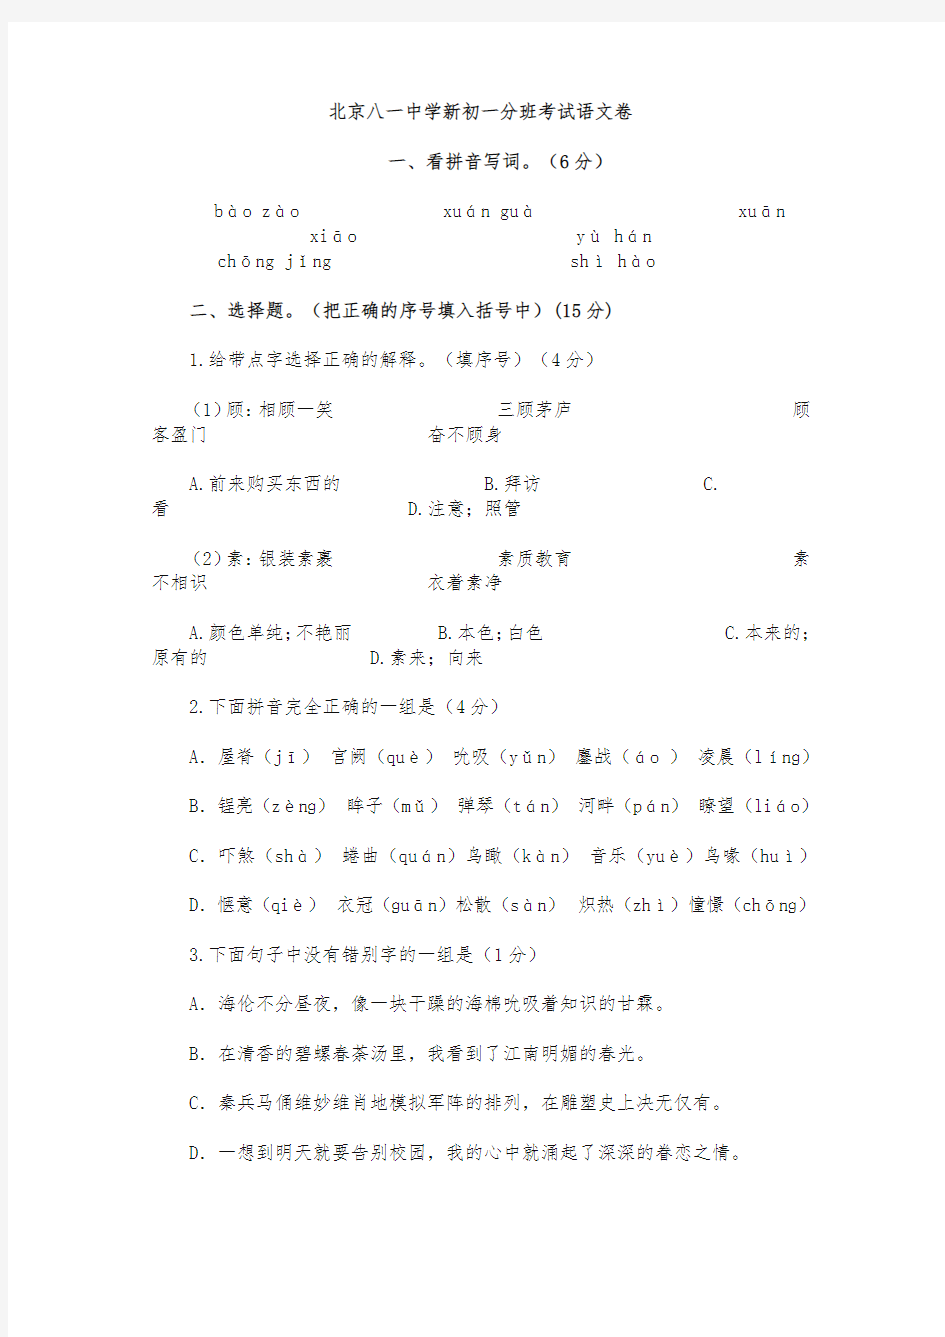 (最新)北京八一中学初一分班考试试题